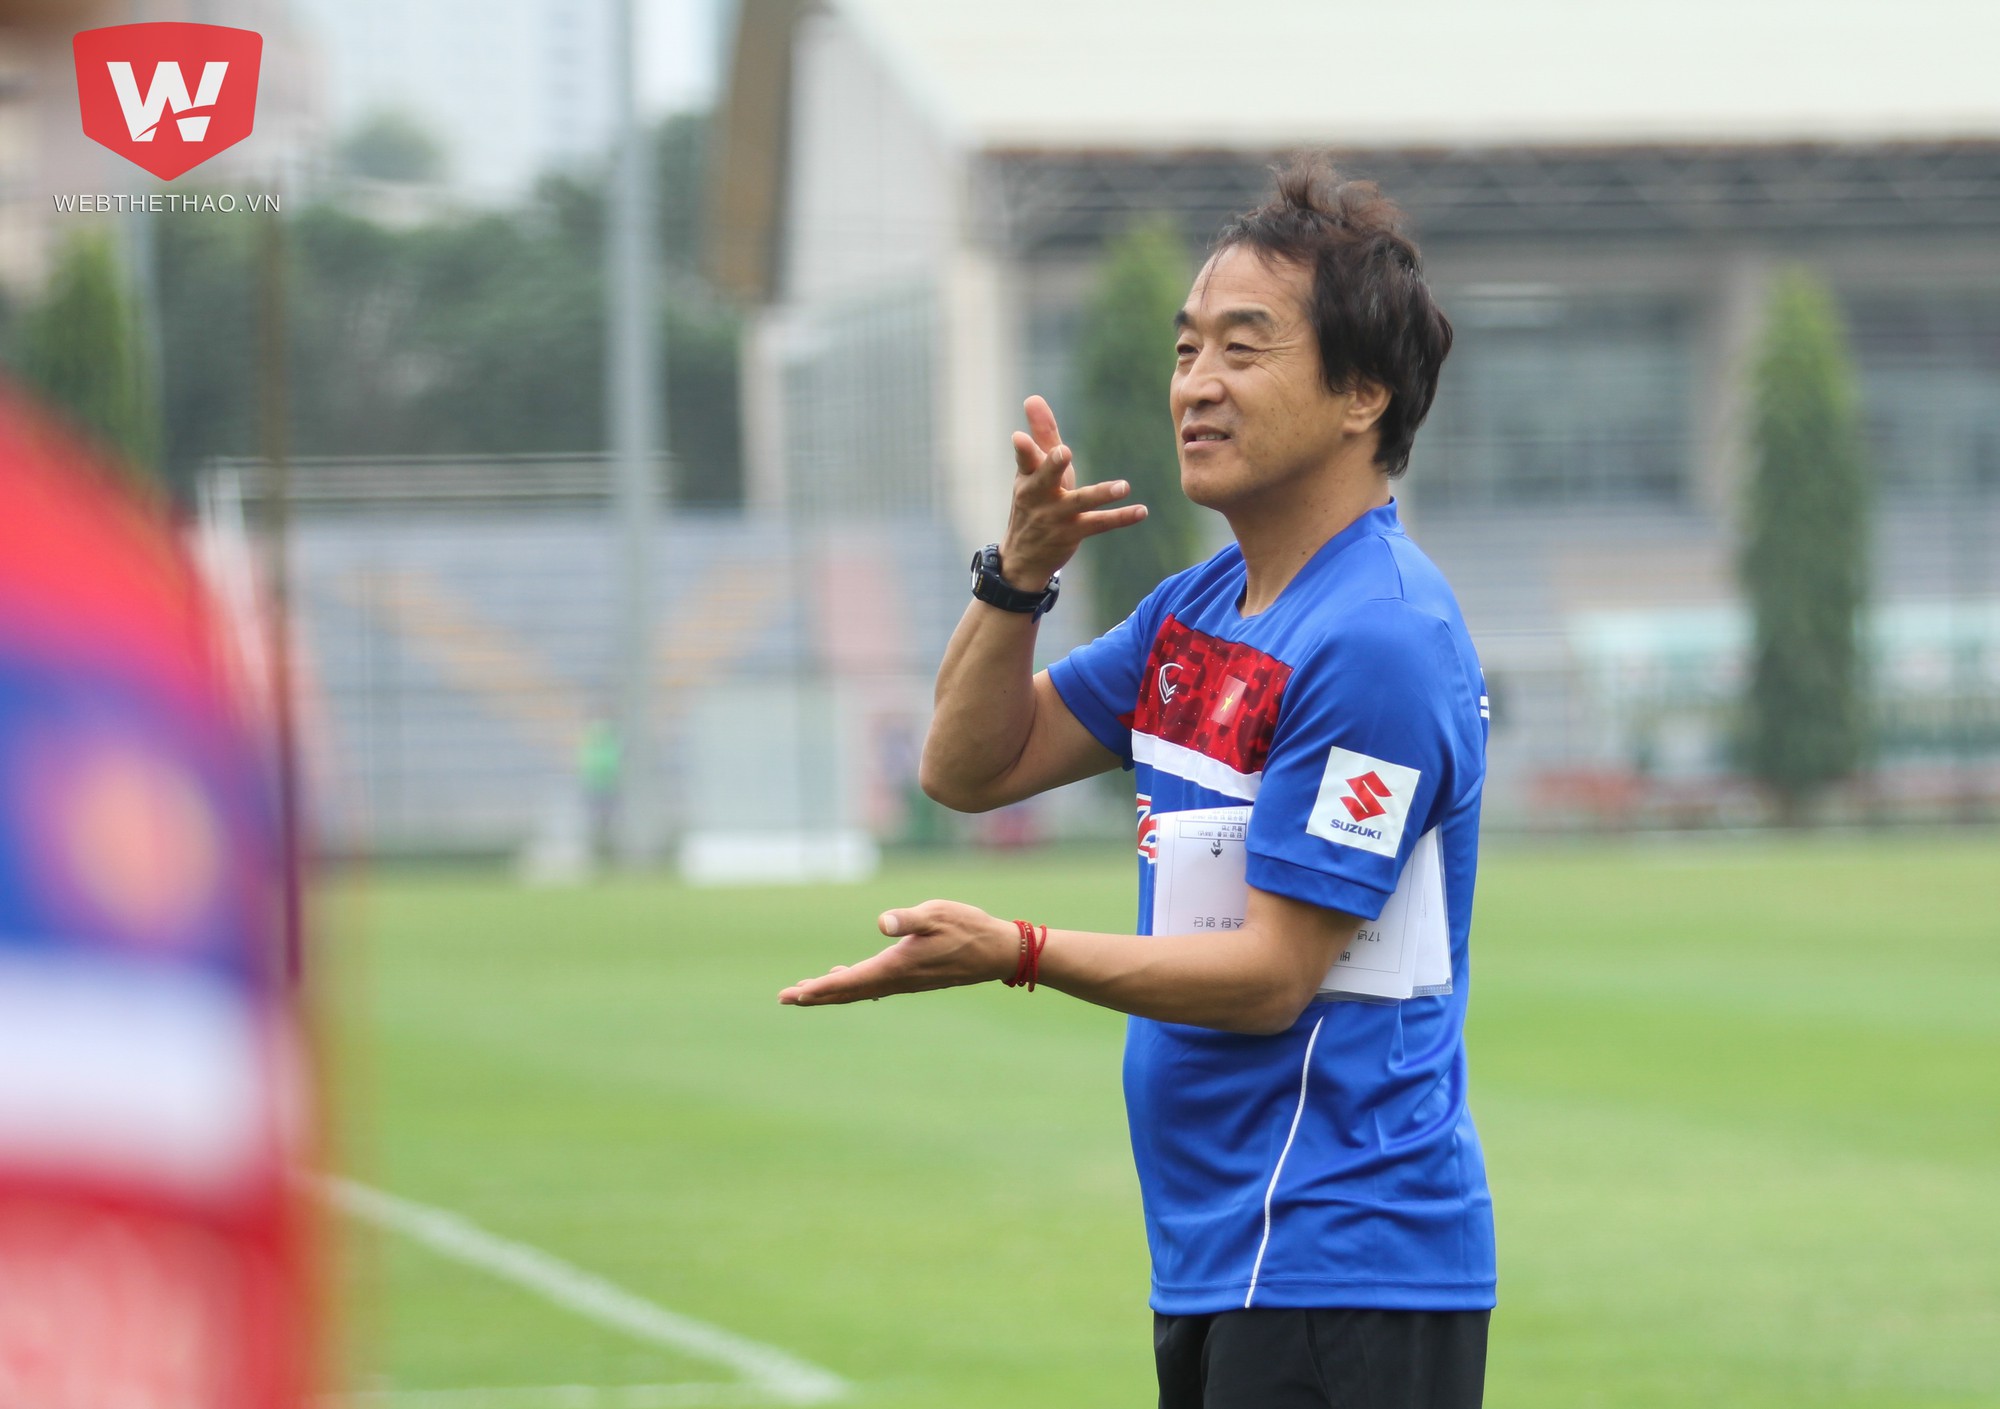 Ông Park và trợ lý Lee Young Jin liên tục hô lớn ''Move'' (Di chuyển) và ''Head up'' (Ngẩng đầu lên) khi các cầu thủ tập luyện. Ảnh: Trung Thu.